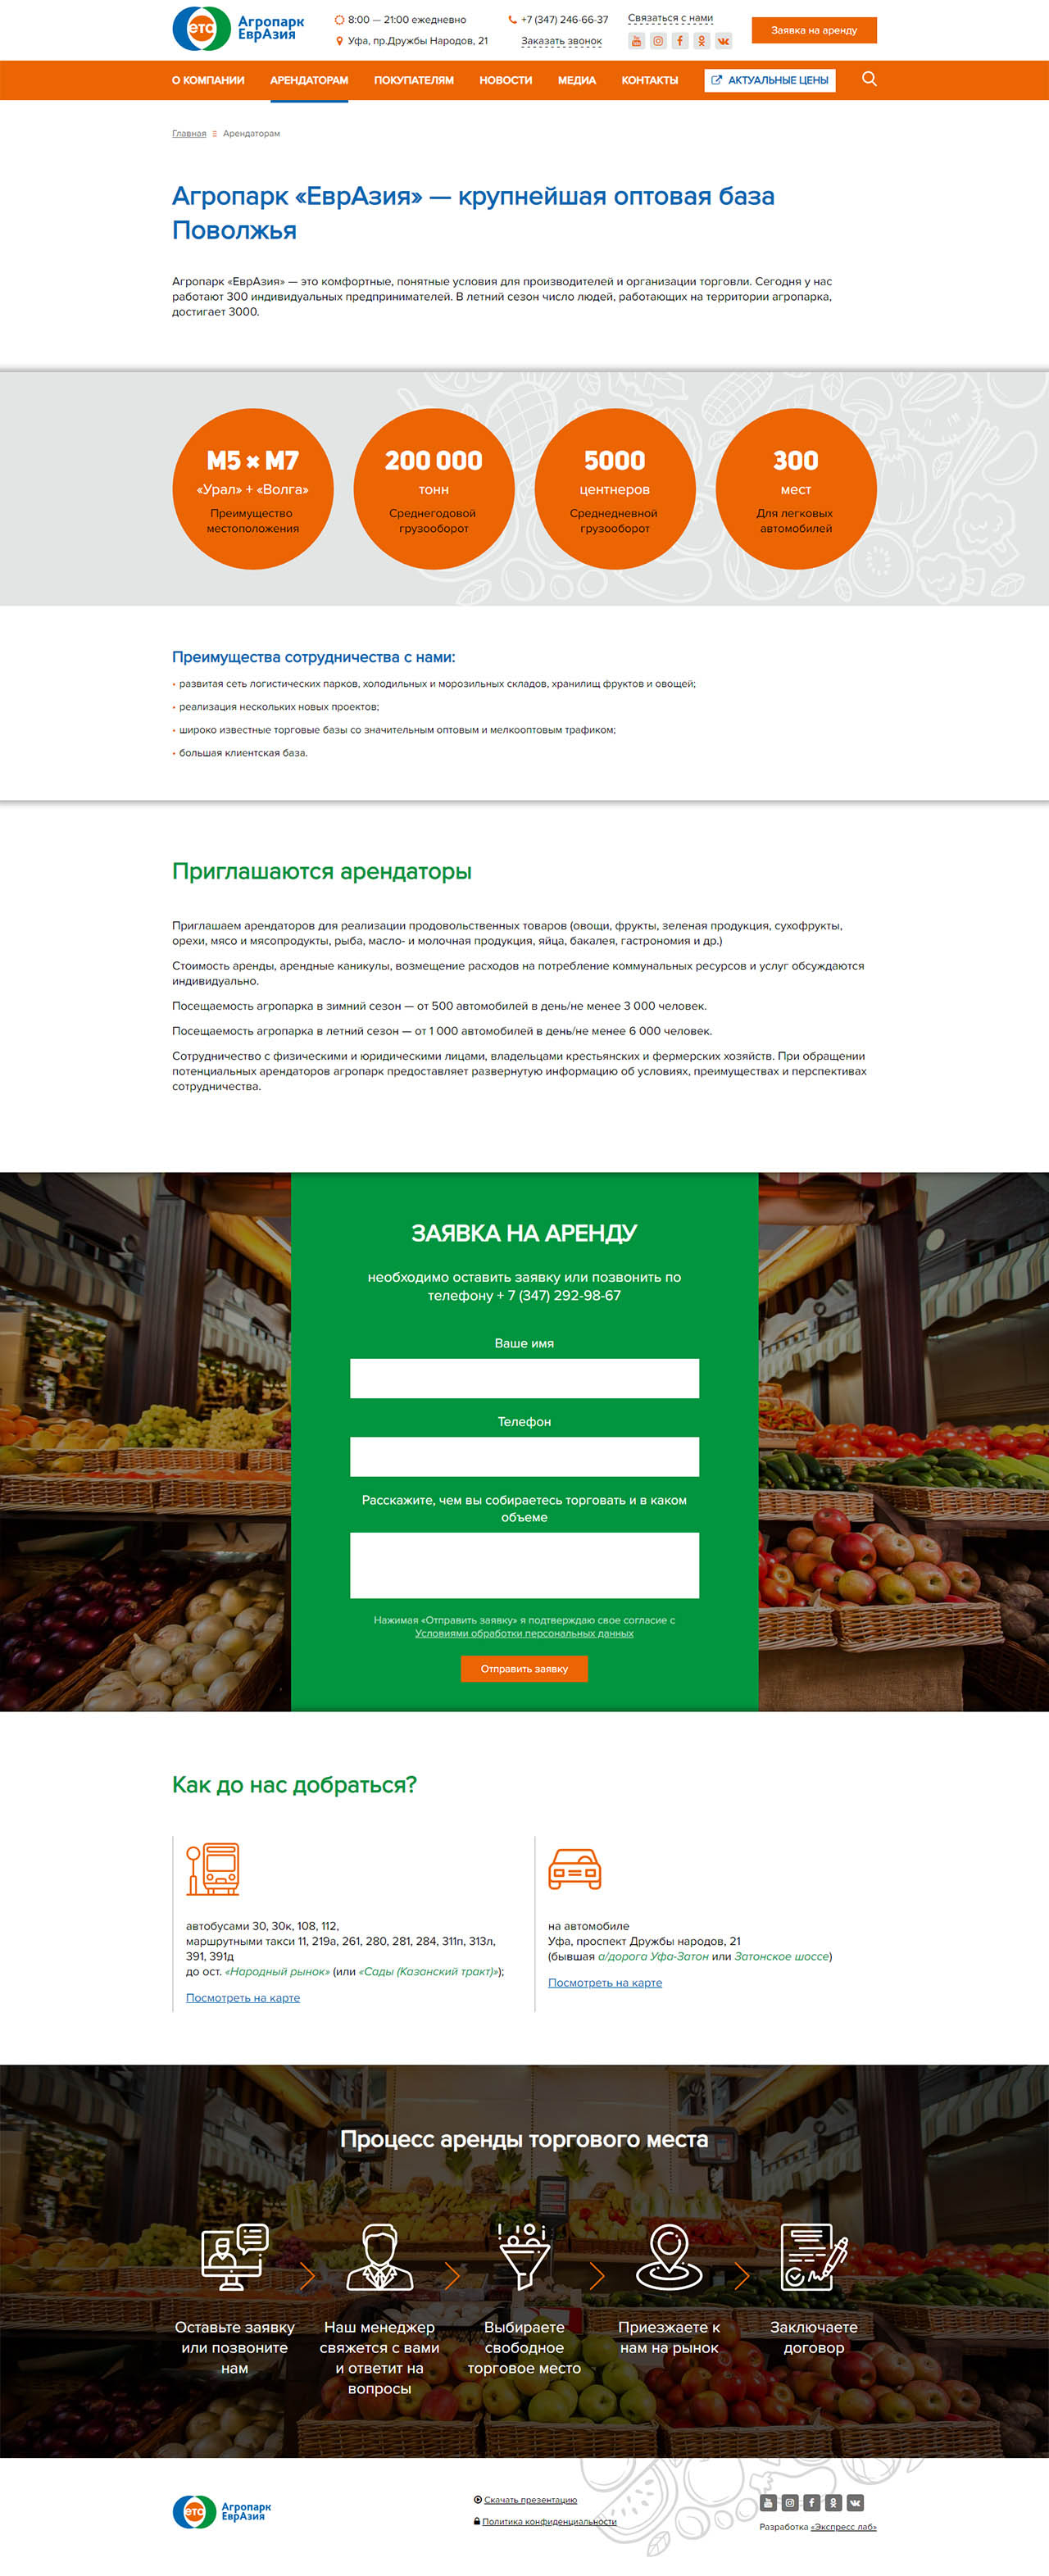 Создание корпоративного сайта Агропарк «ЕврАзия»